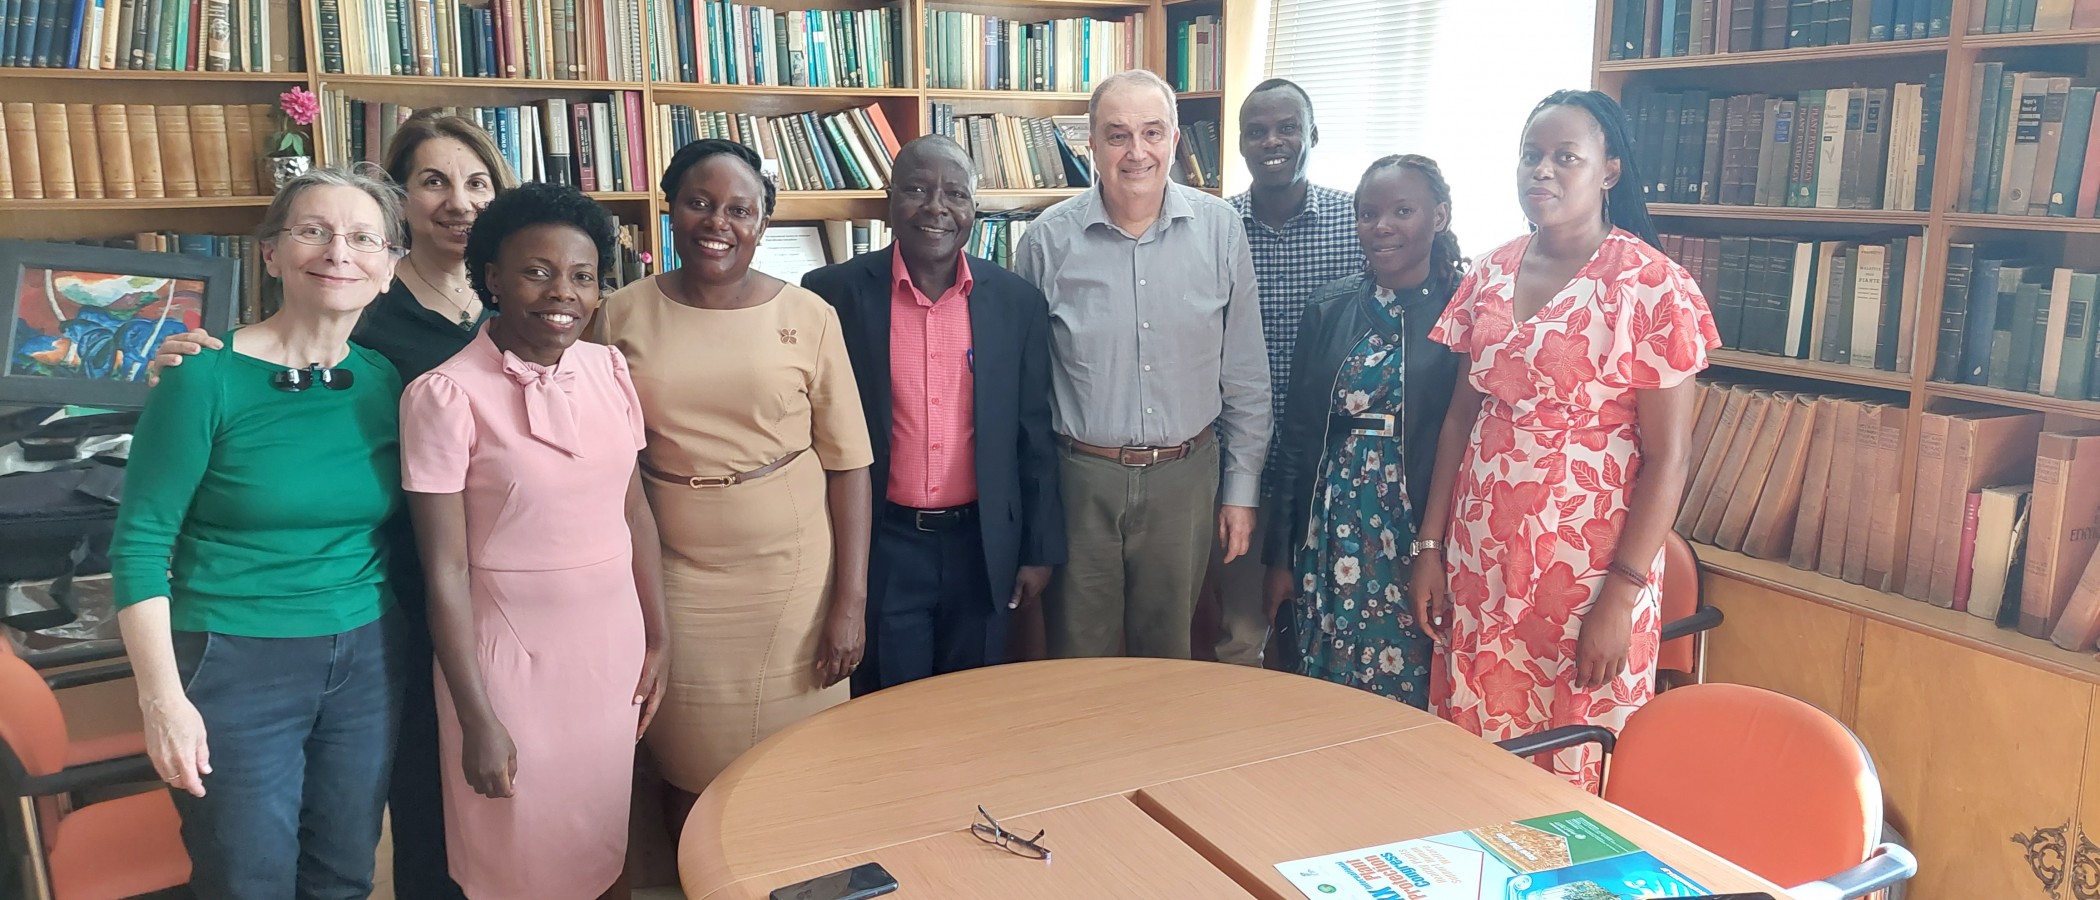 Επίσκεψη αντιπροσωπείας του Uganda Christian University της Ουγκάντα στο Γεωπονικό Πανεπιστήμιο Αθηνών.